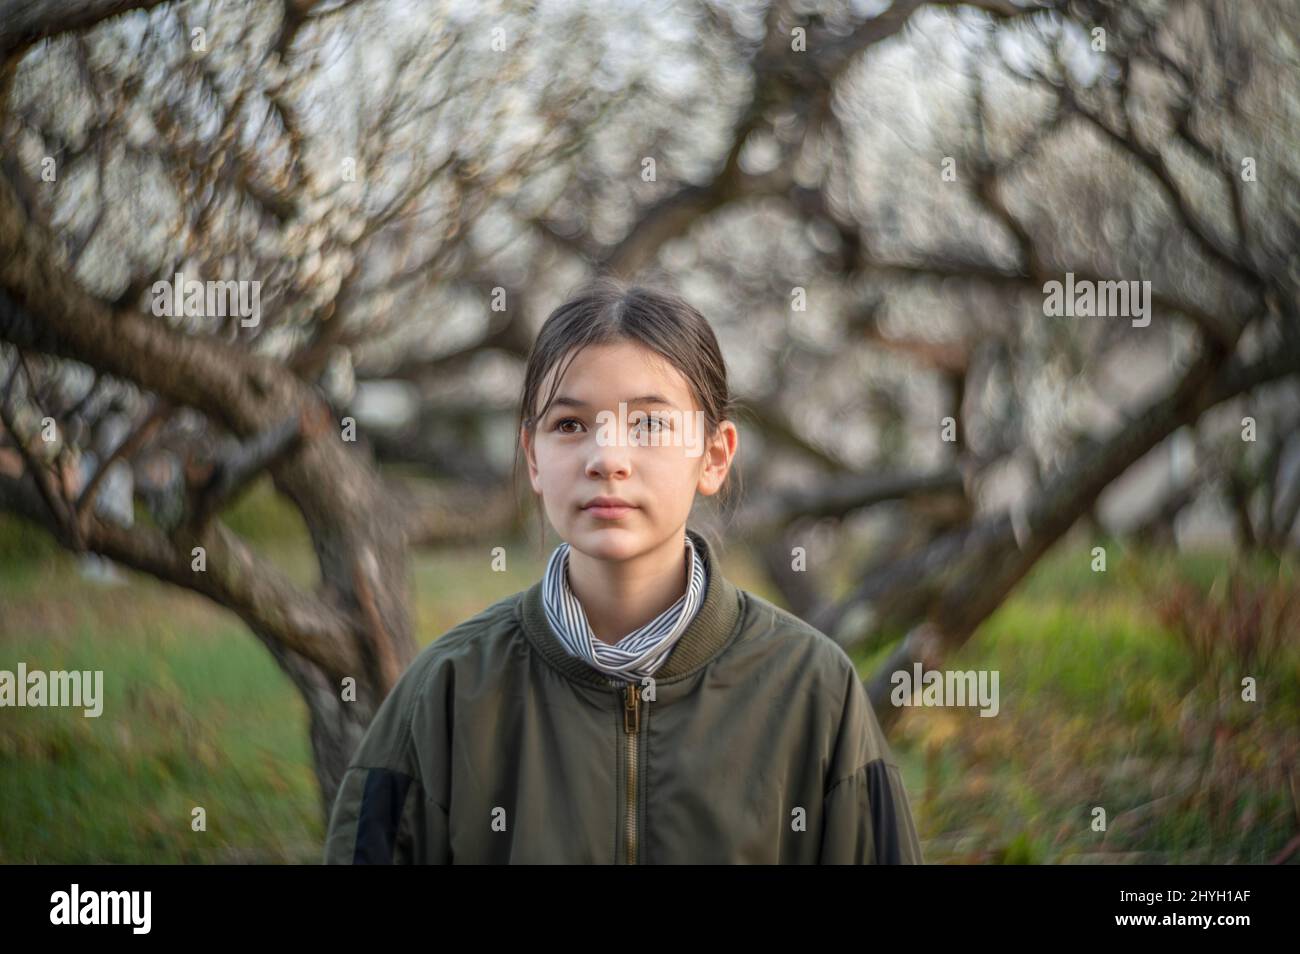 Porträt eines glücklichen Pre-Teen-Mädchens in einem Park. Kind trägt eine grüne Jacke und Rollkragen. Blühende Bäume im Hintergrund. Frühling. Stockfoto